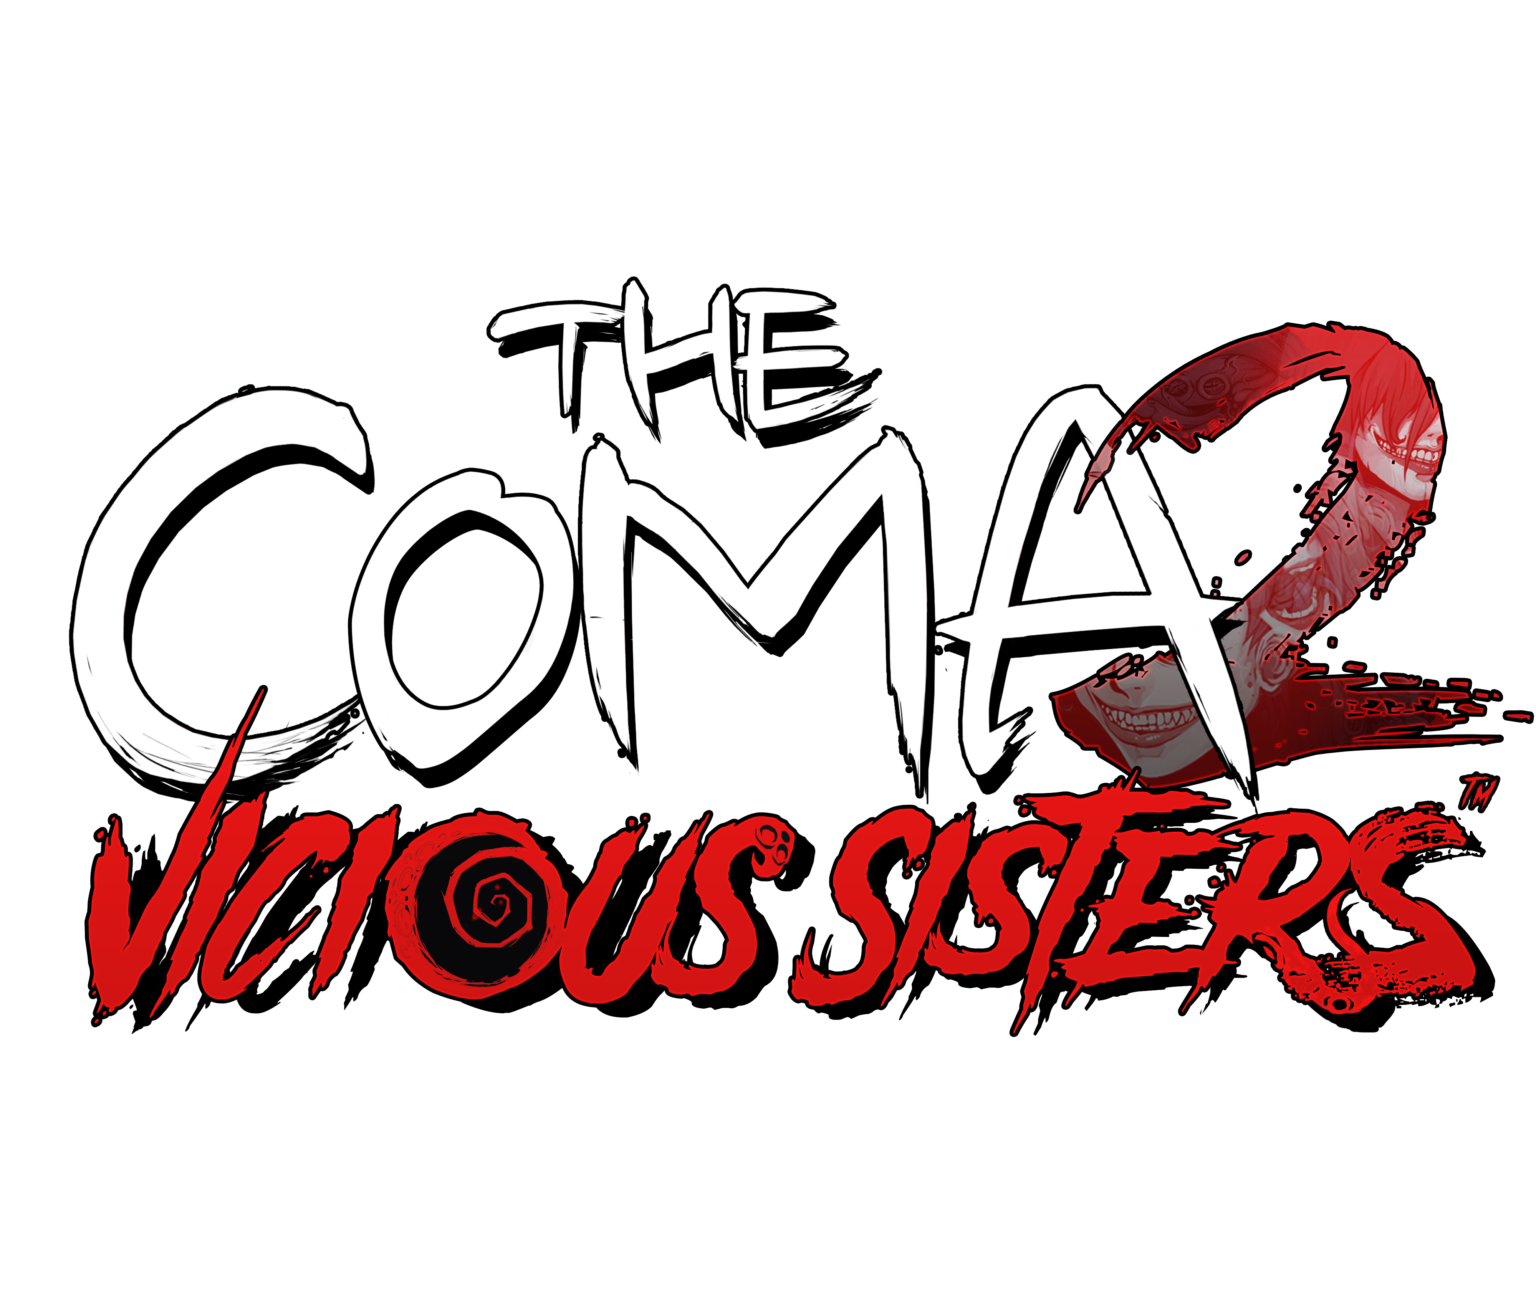 Coma vicious sisters. The coma 2 Vicious sisters Токкеби. Логотип кома игры.